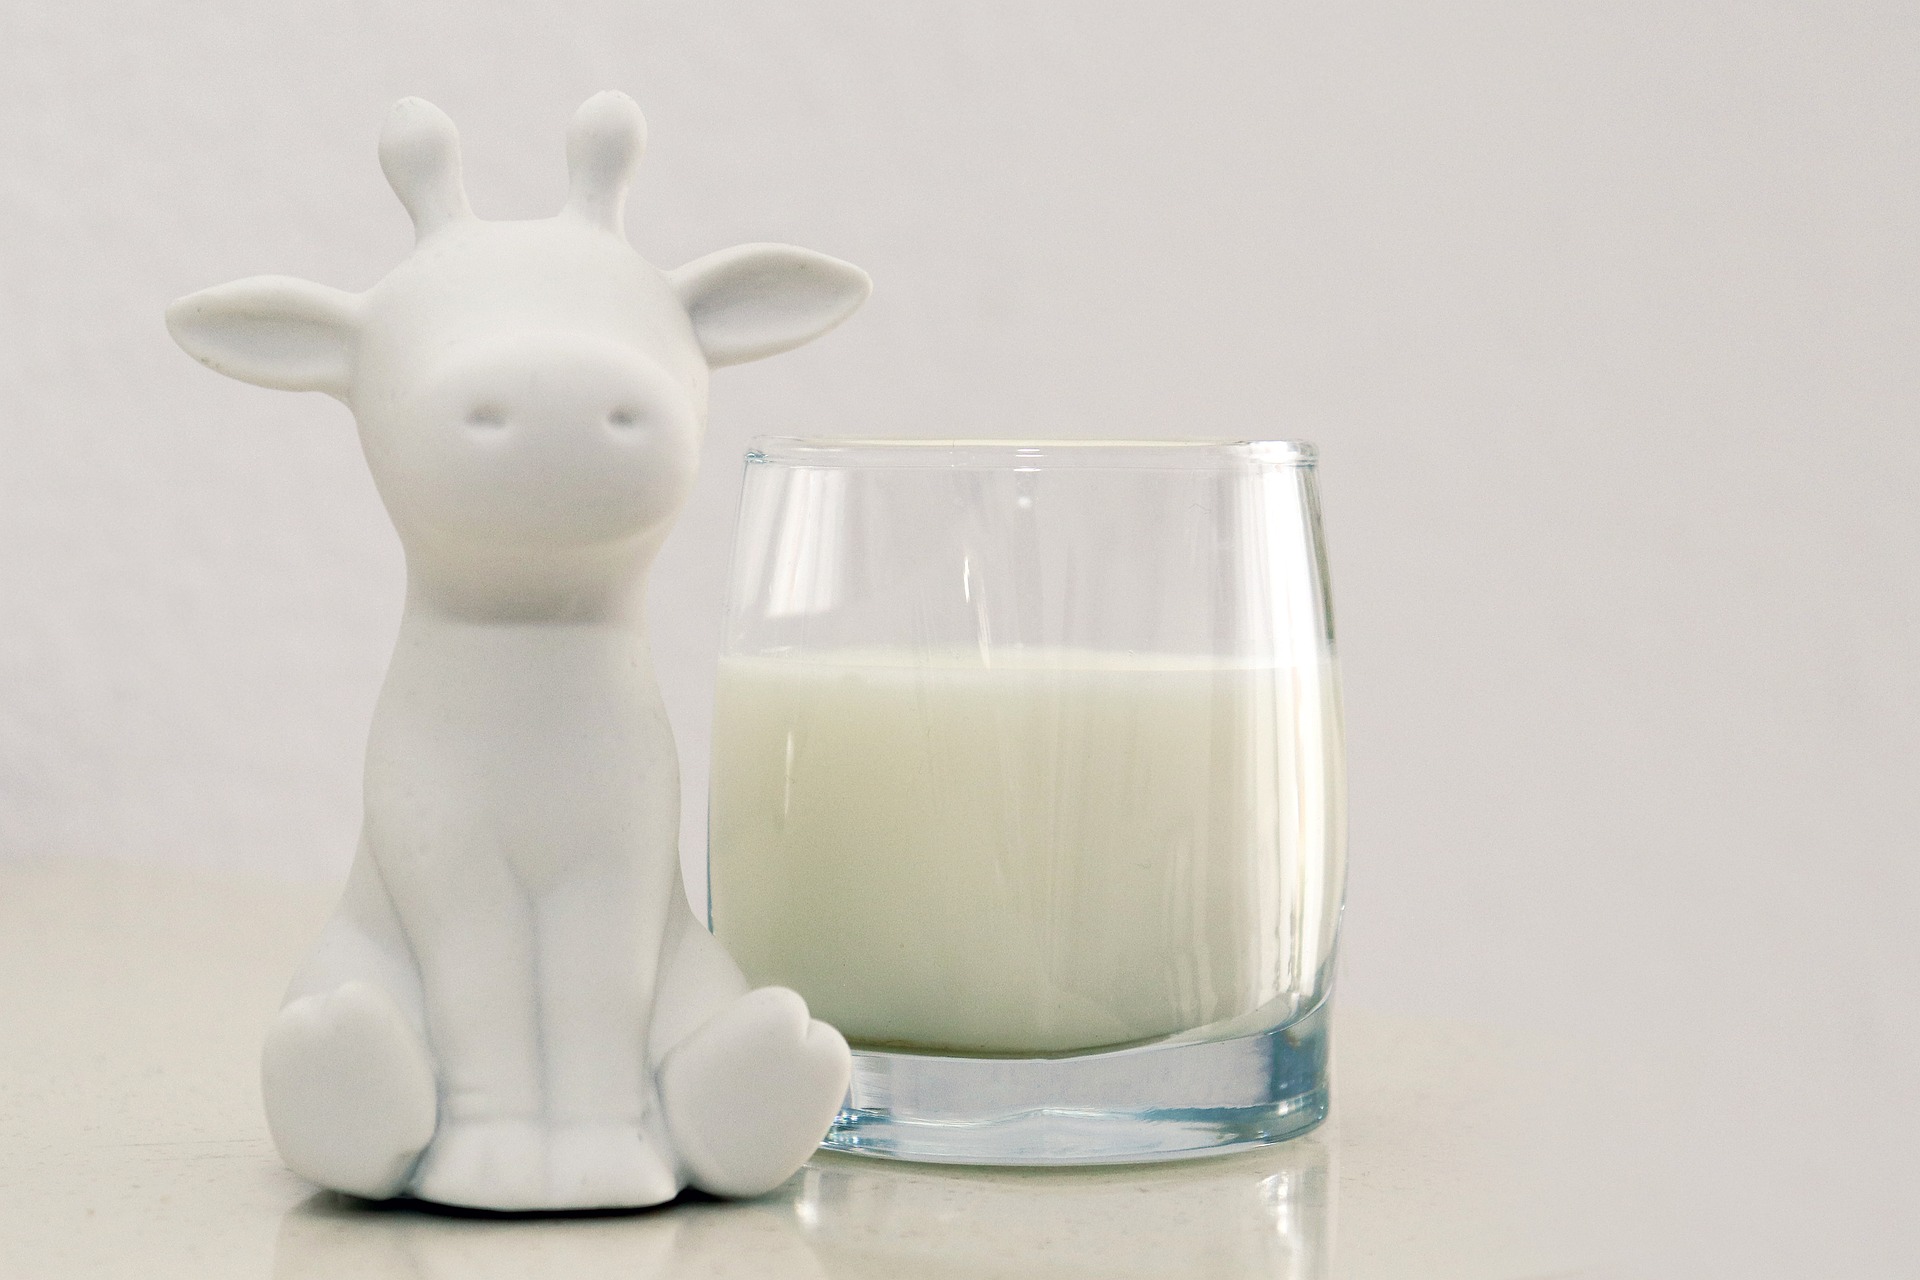 컵에 담겨 있는 우유와 젓소를 상징하는 앙증맞은 소 소인형 사진 - 태음인(太陰人)에게 맞는 음식